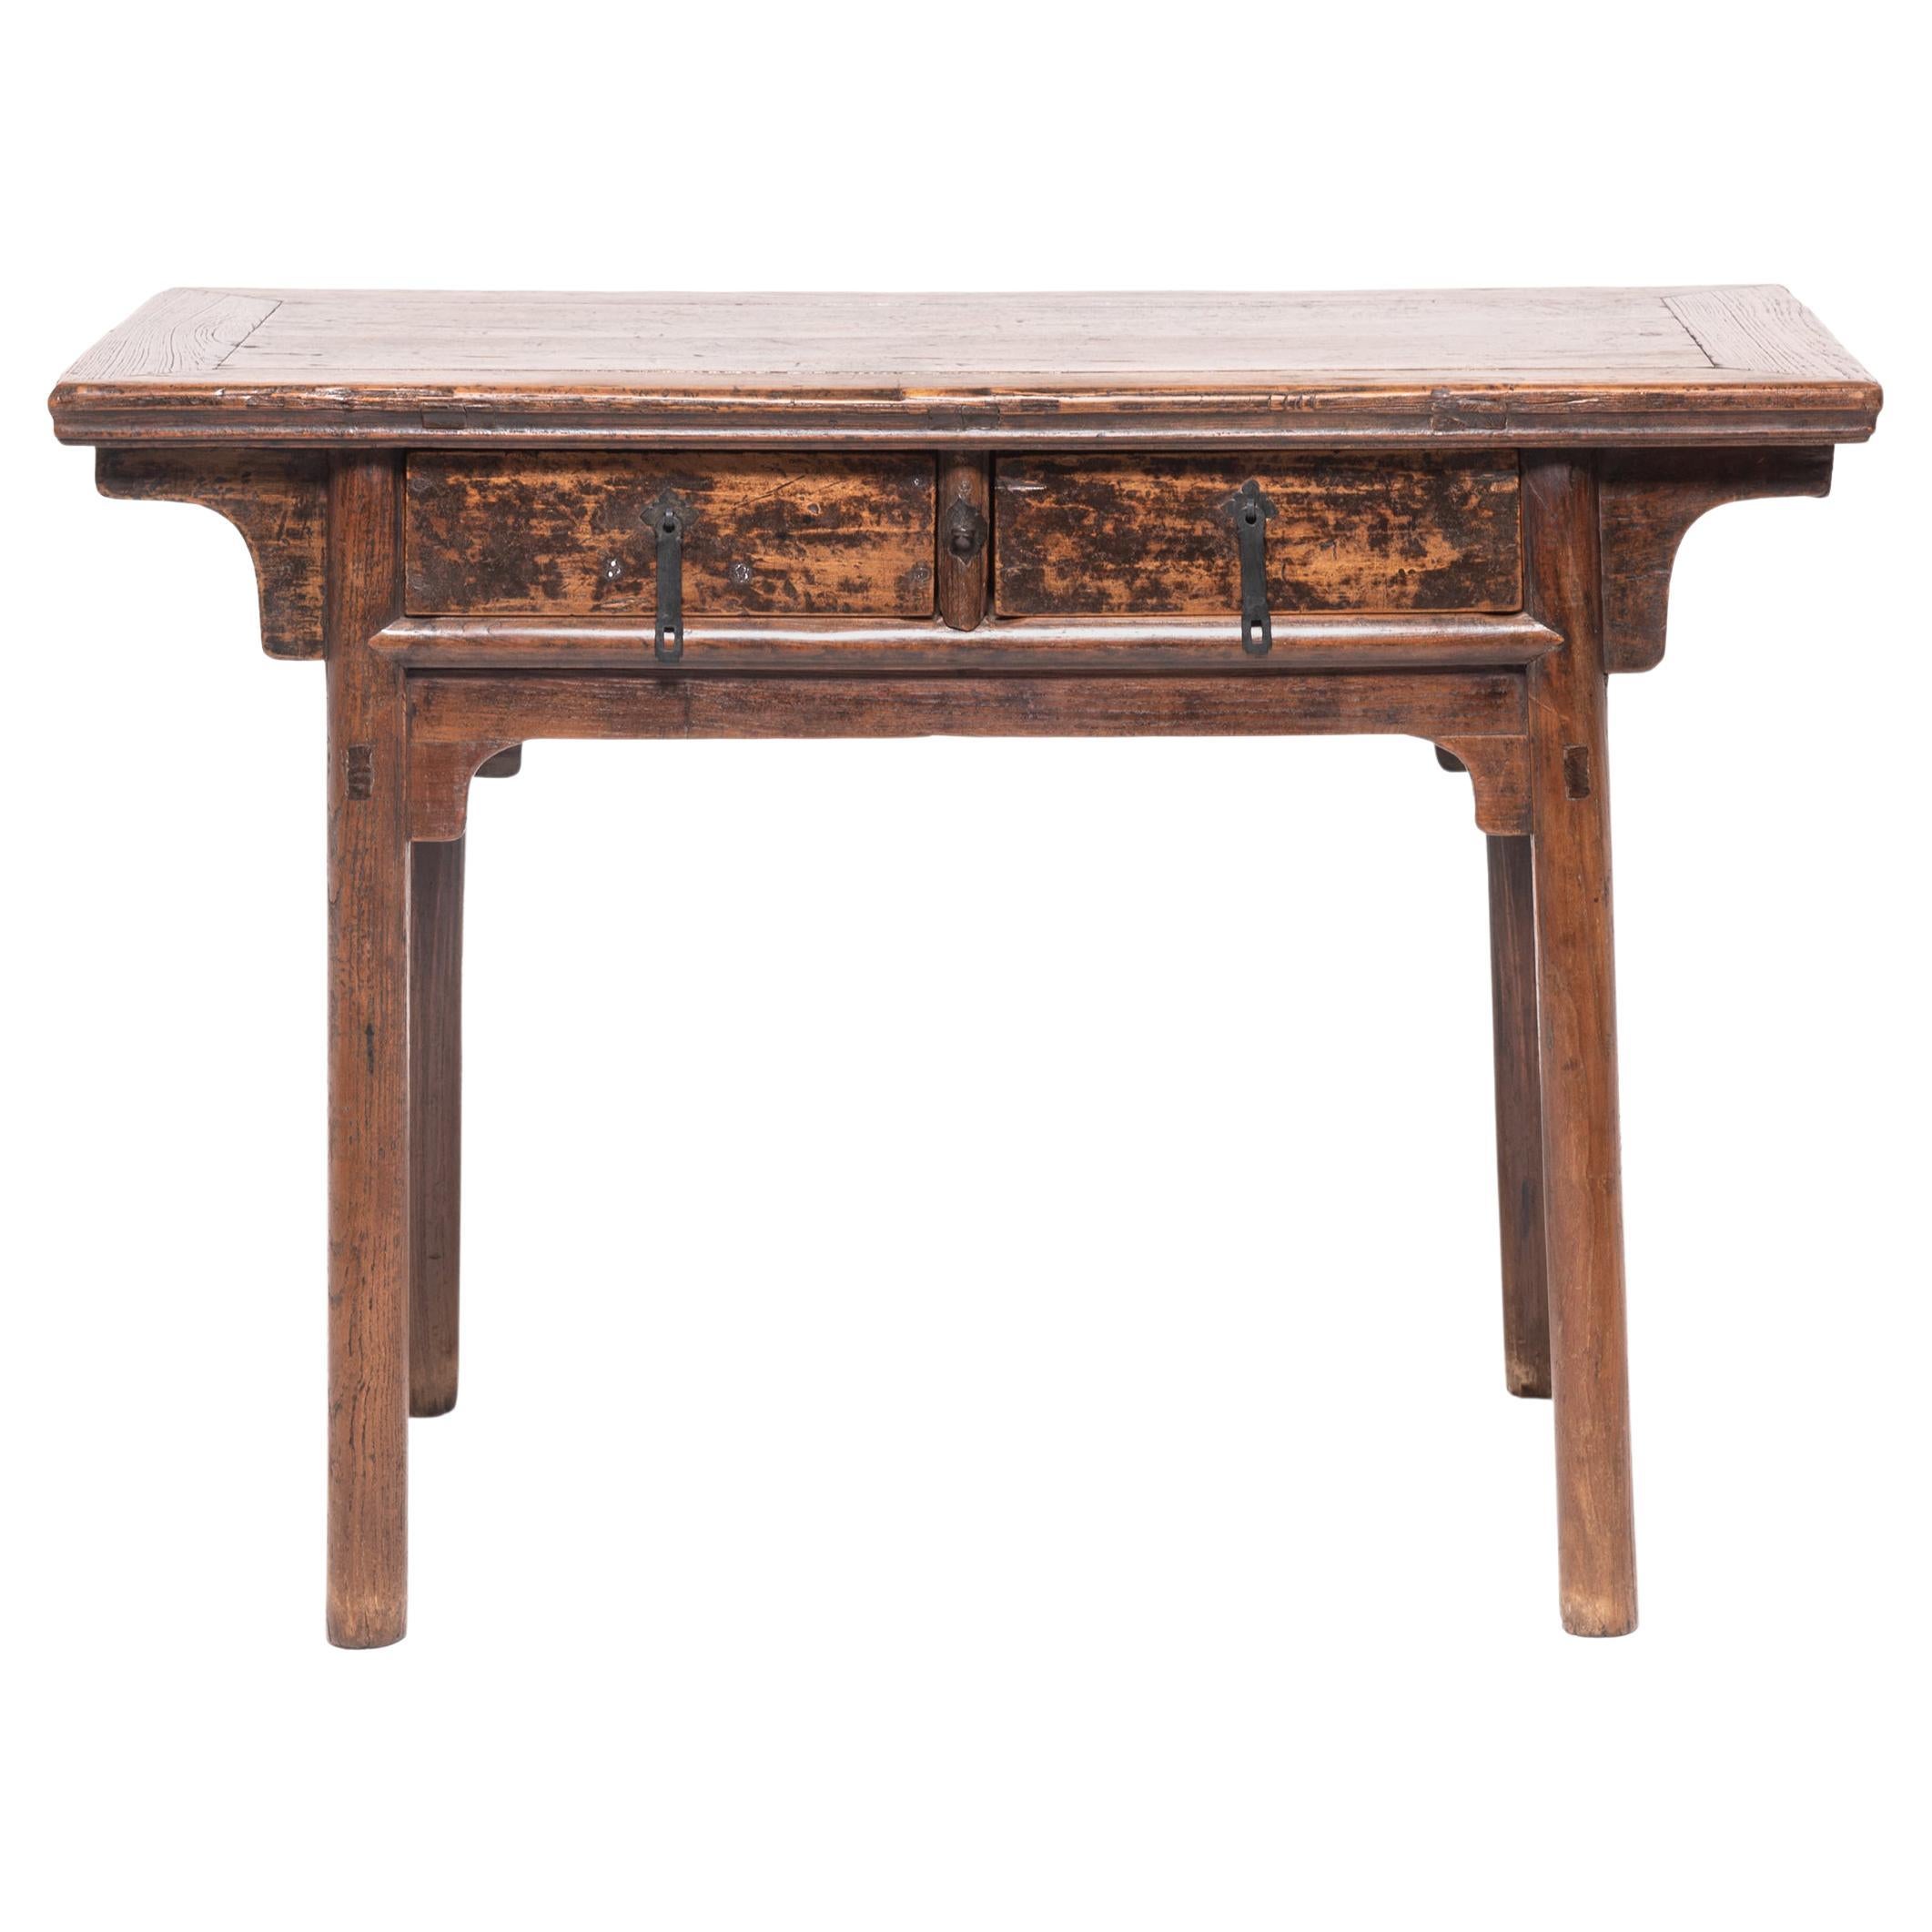 Table provinciale chinoise à deux tiroirs, vers 1800